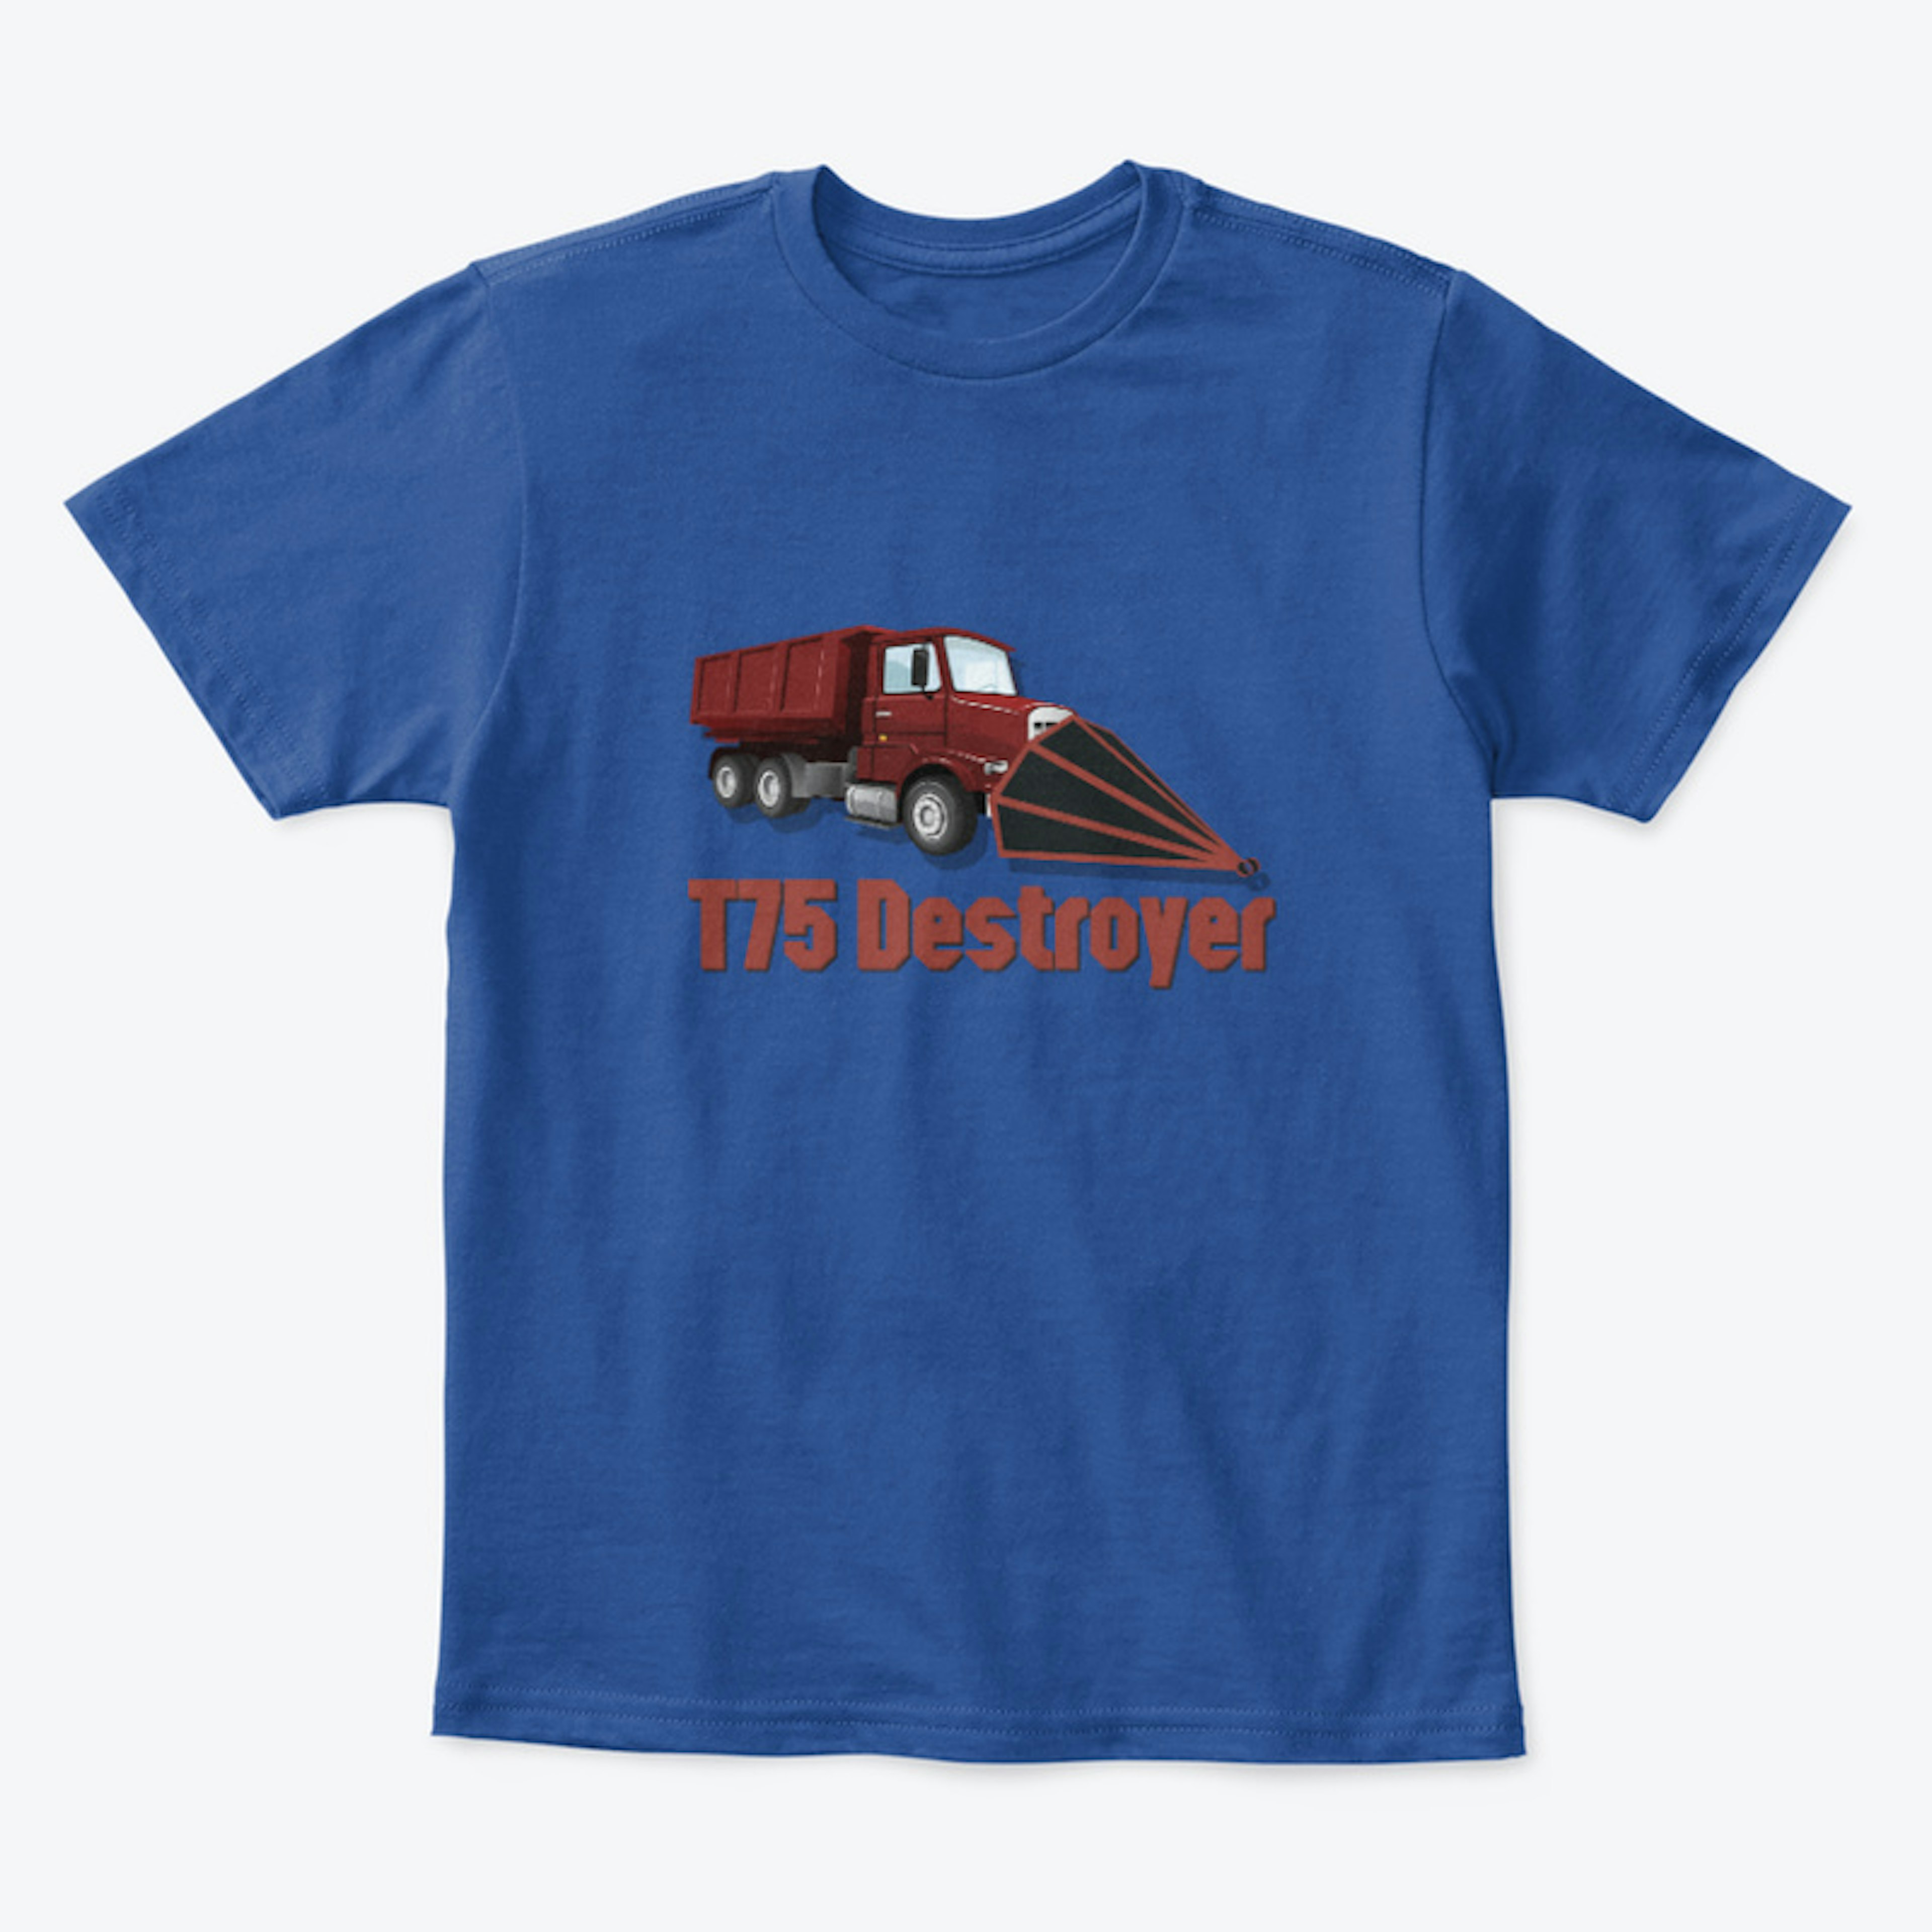 T75 Destroyer